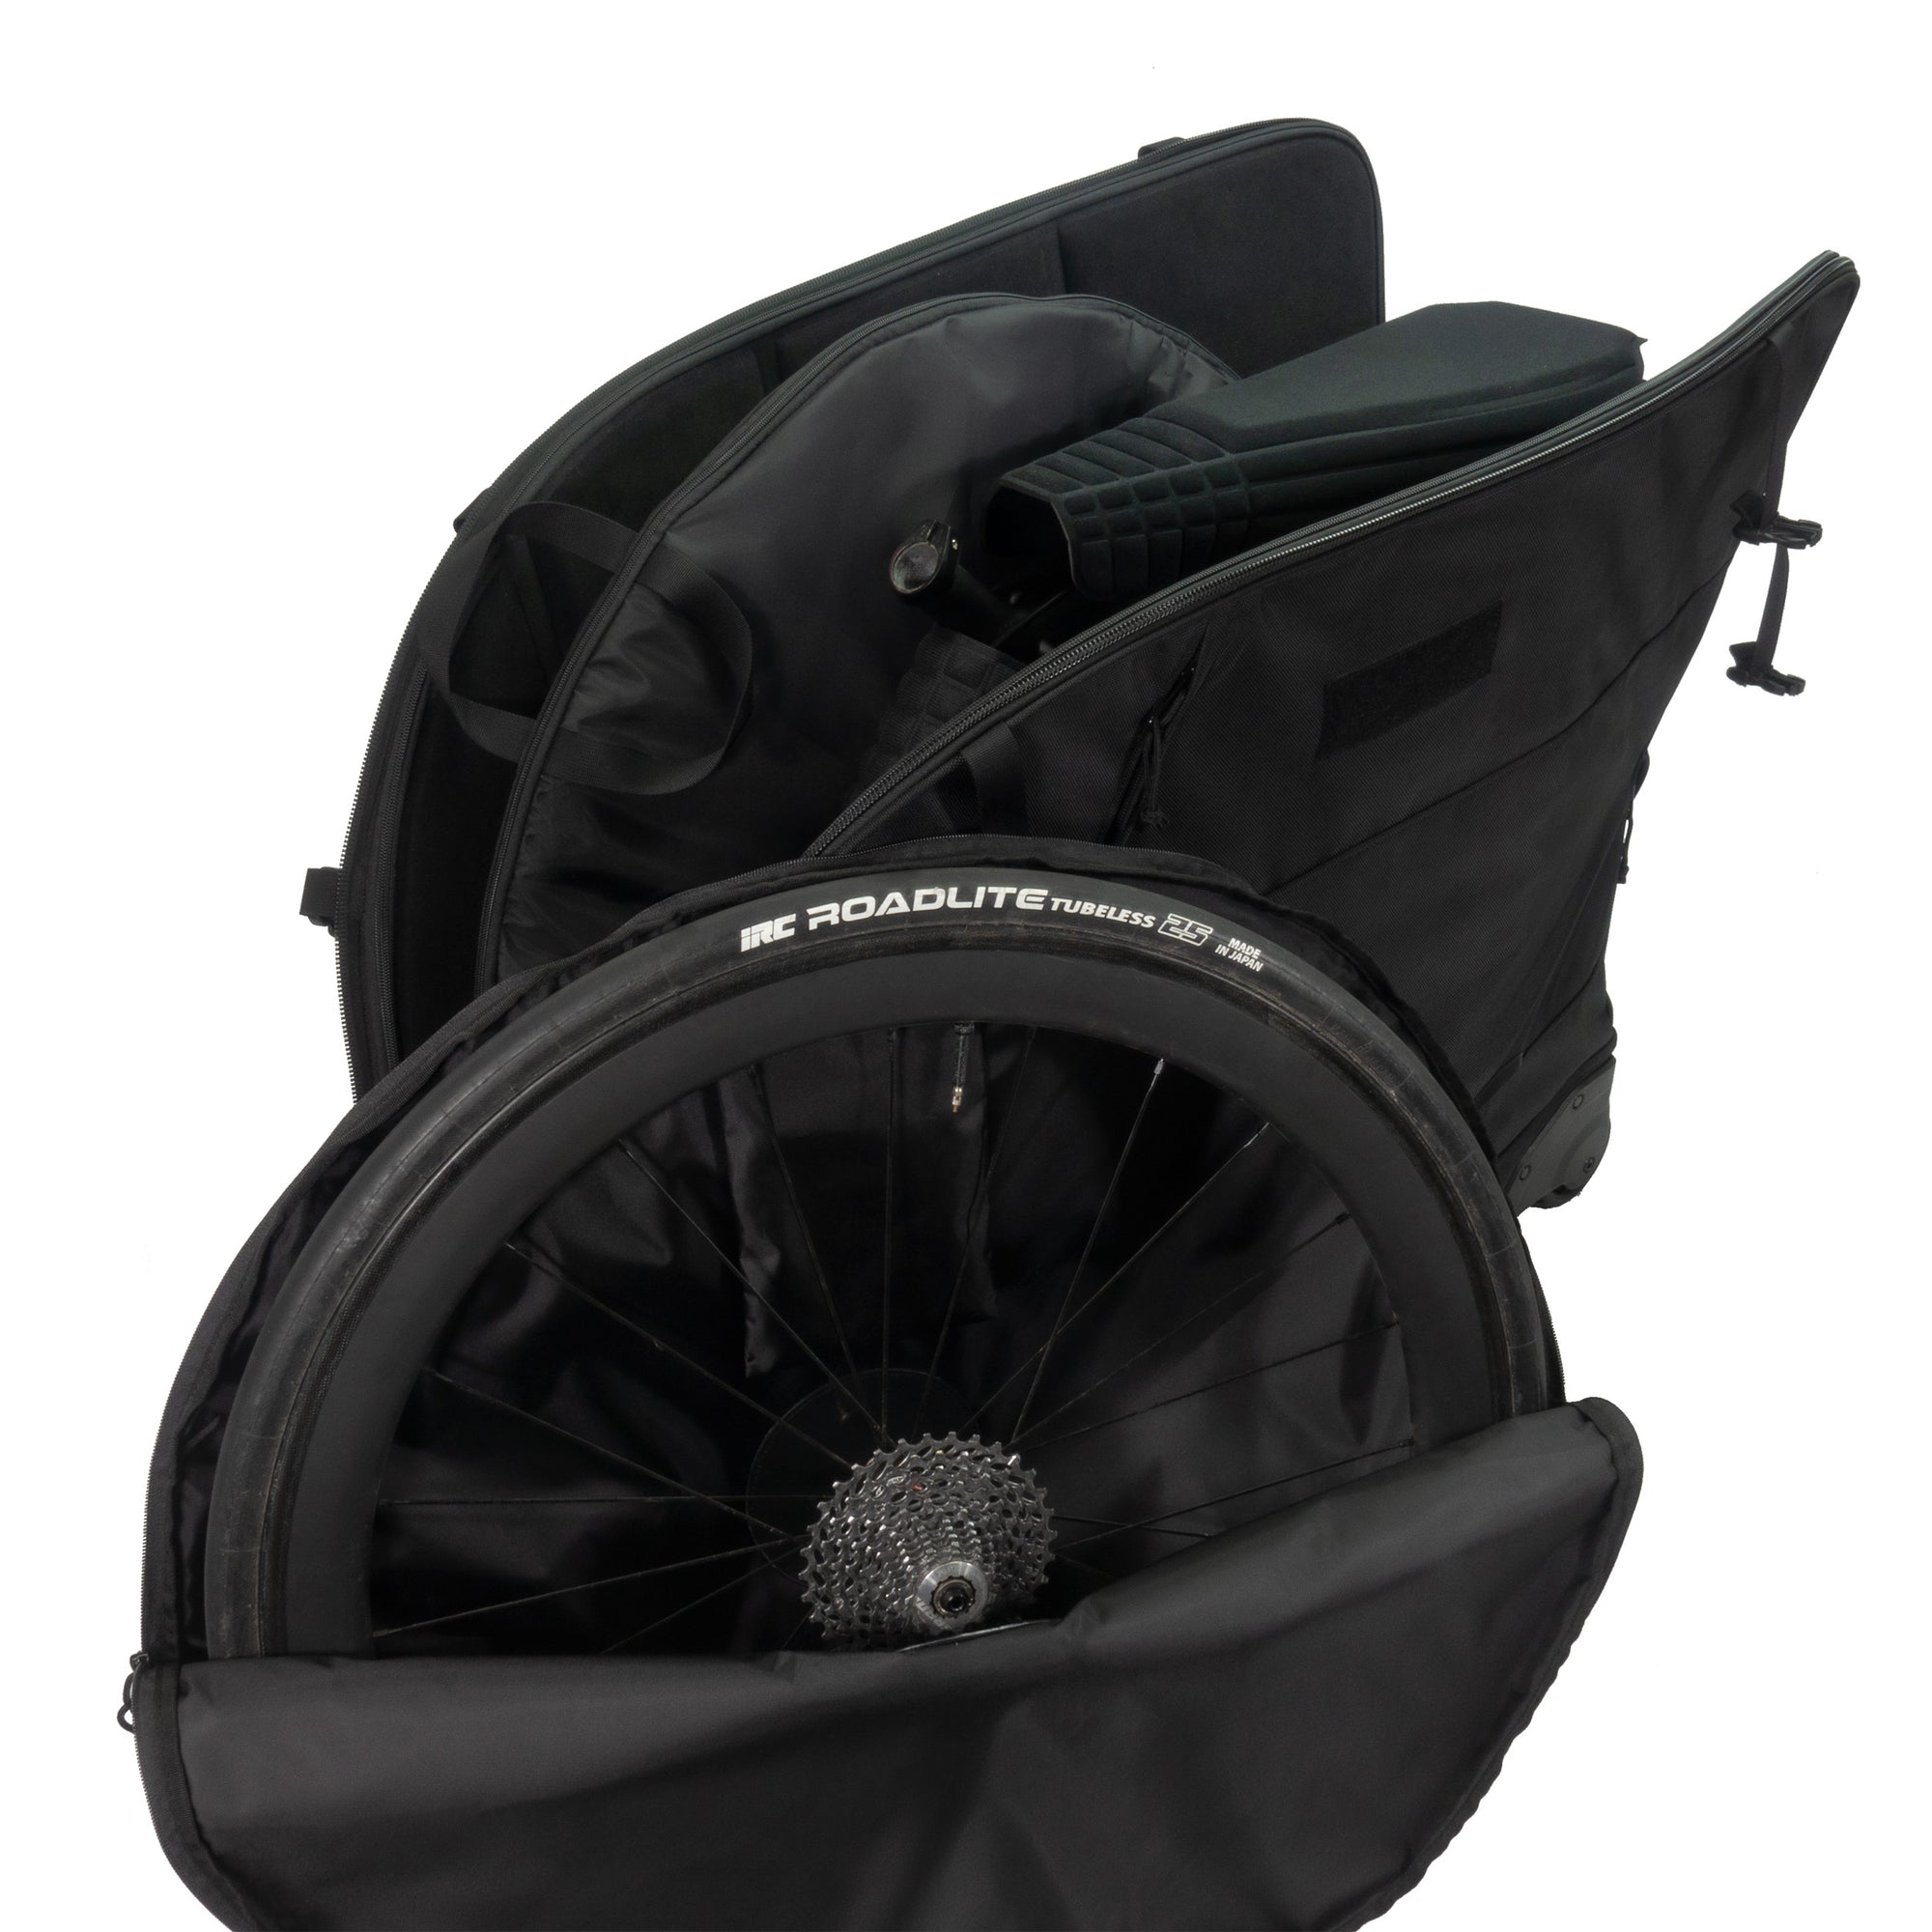 Orucase B2 Bike travel case - open with wheel in wheel bag